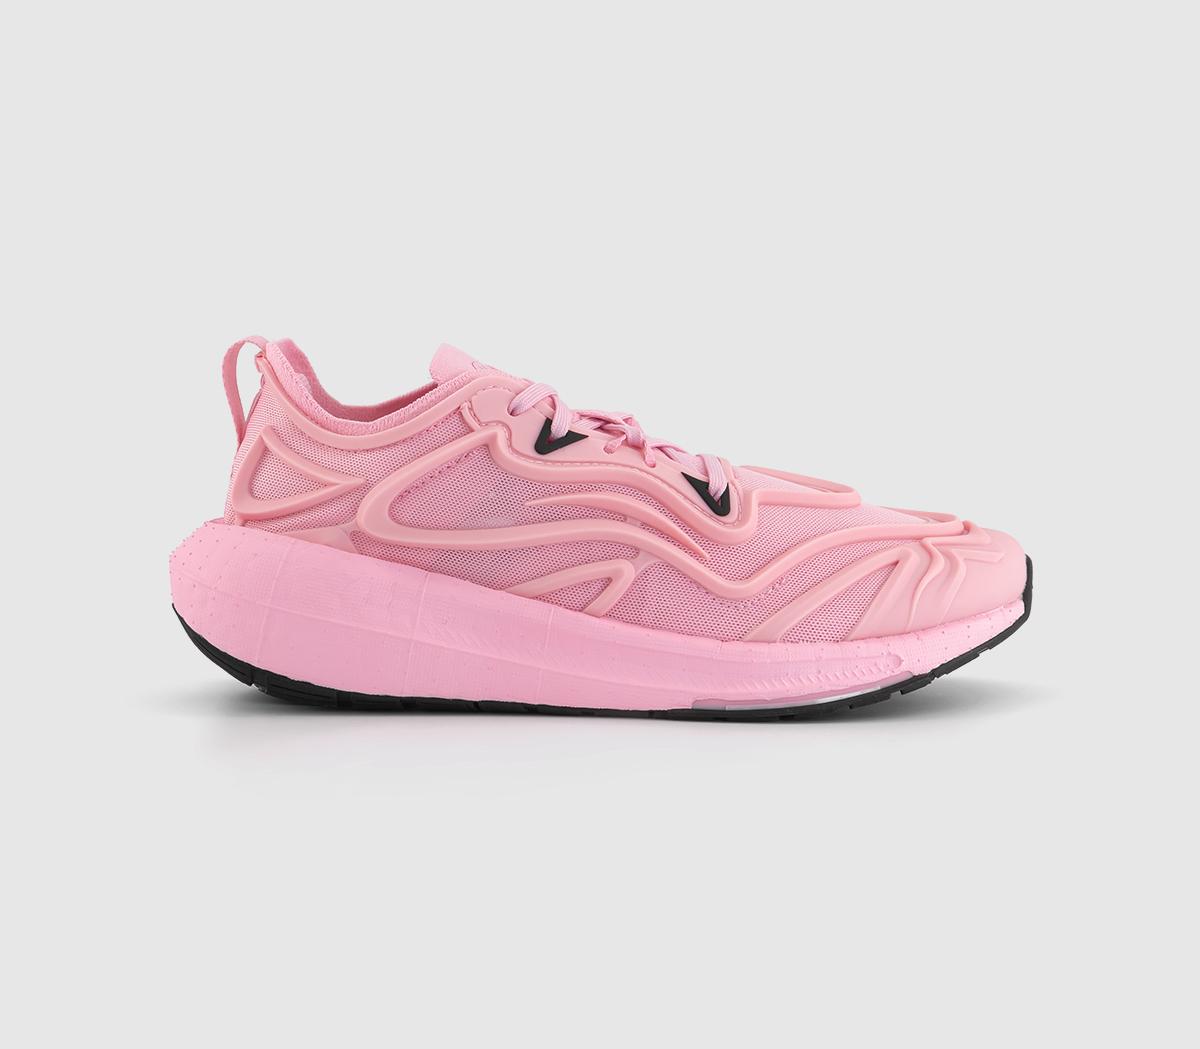 Adidas Womens Asmc Ultra Boost Speed Trainers True Pink True Pink Black, 6